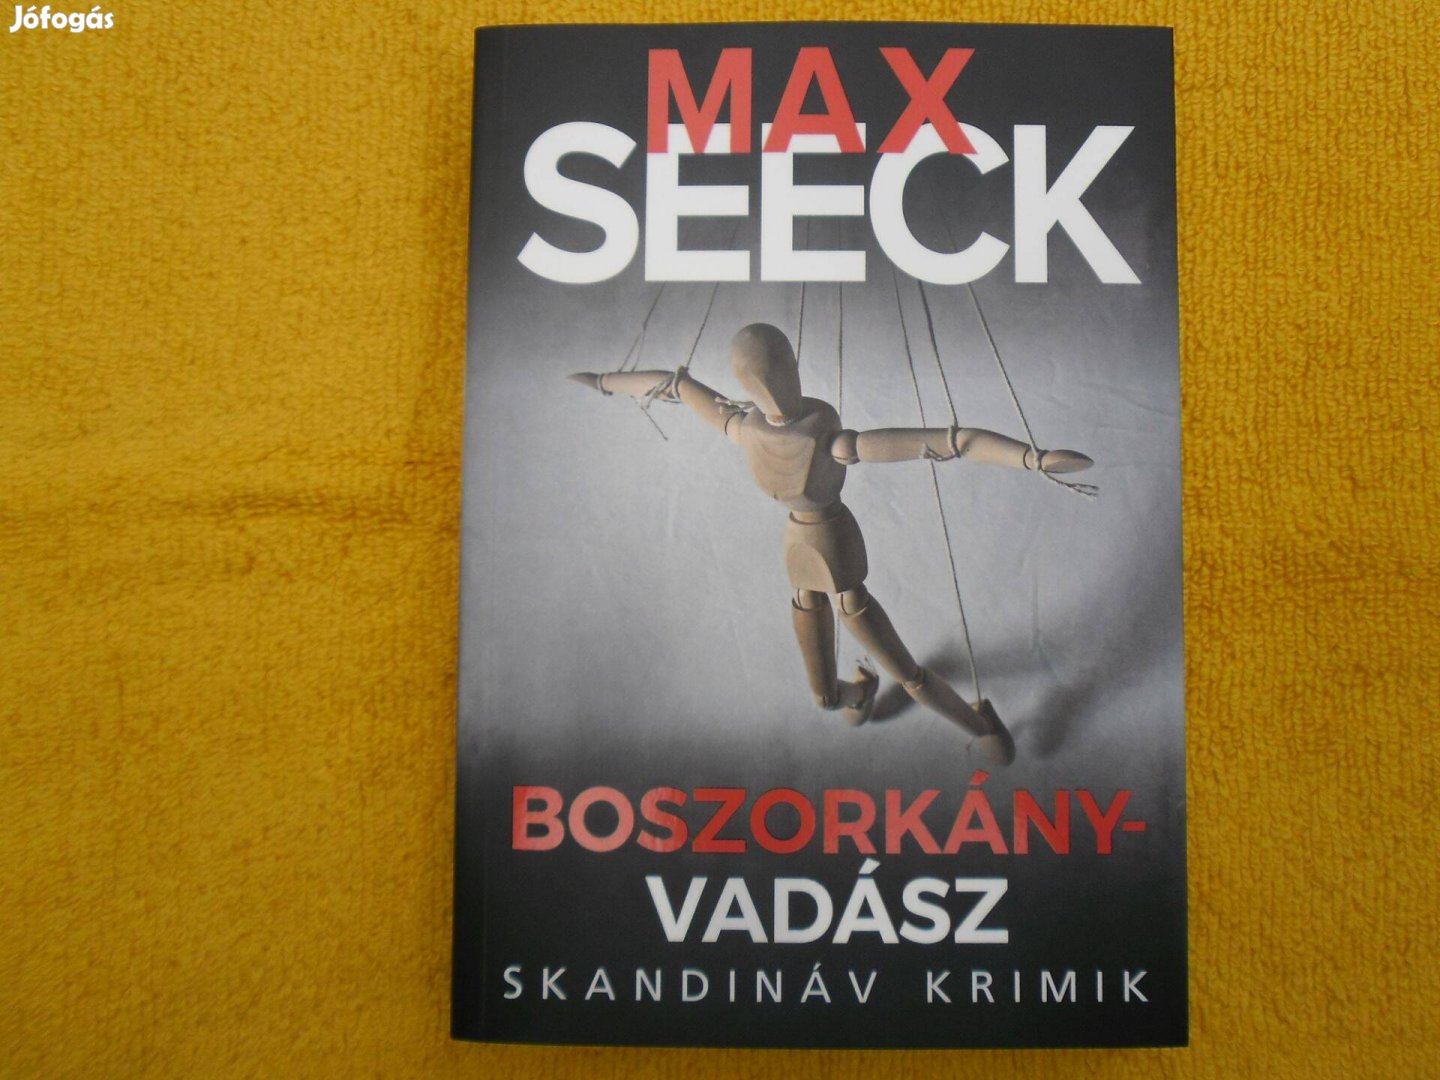 Max Seeck: Boszorkányvadász /Skandináv krimik/